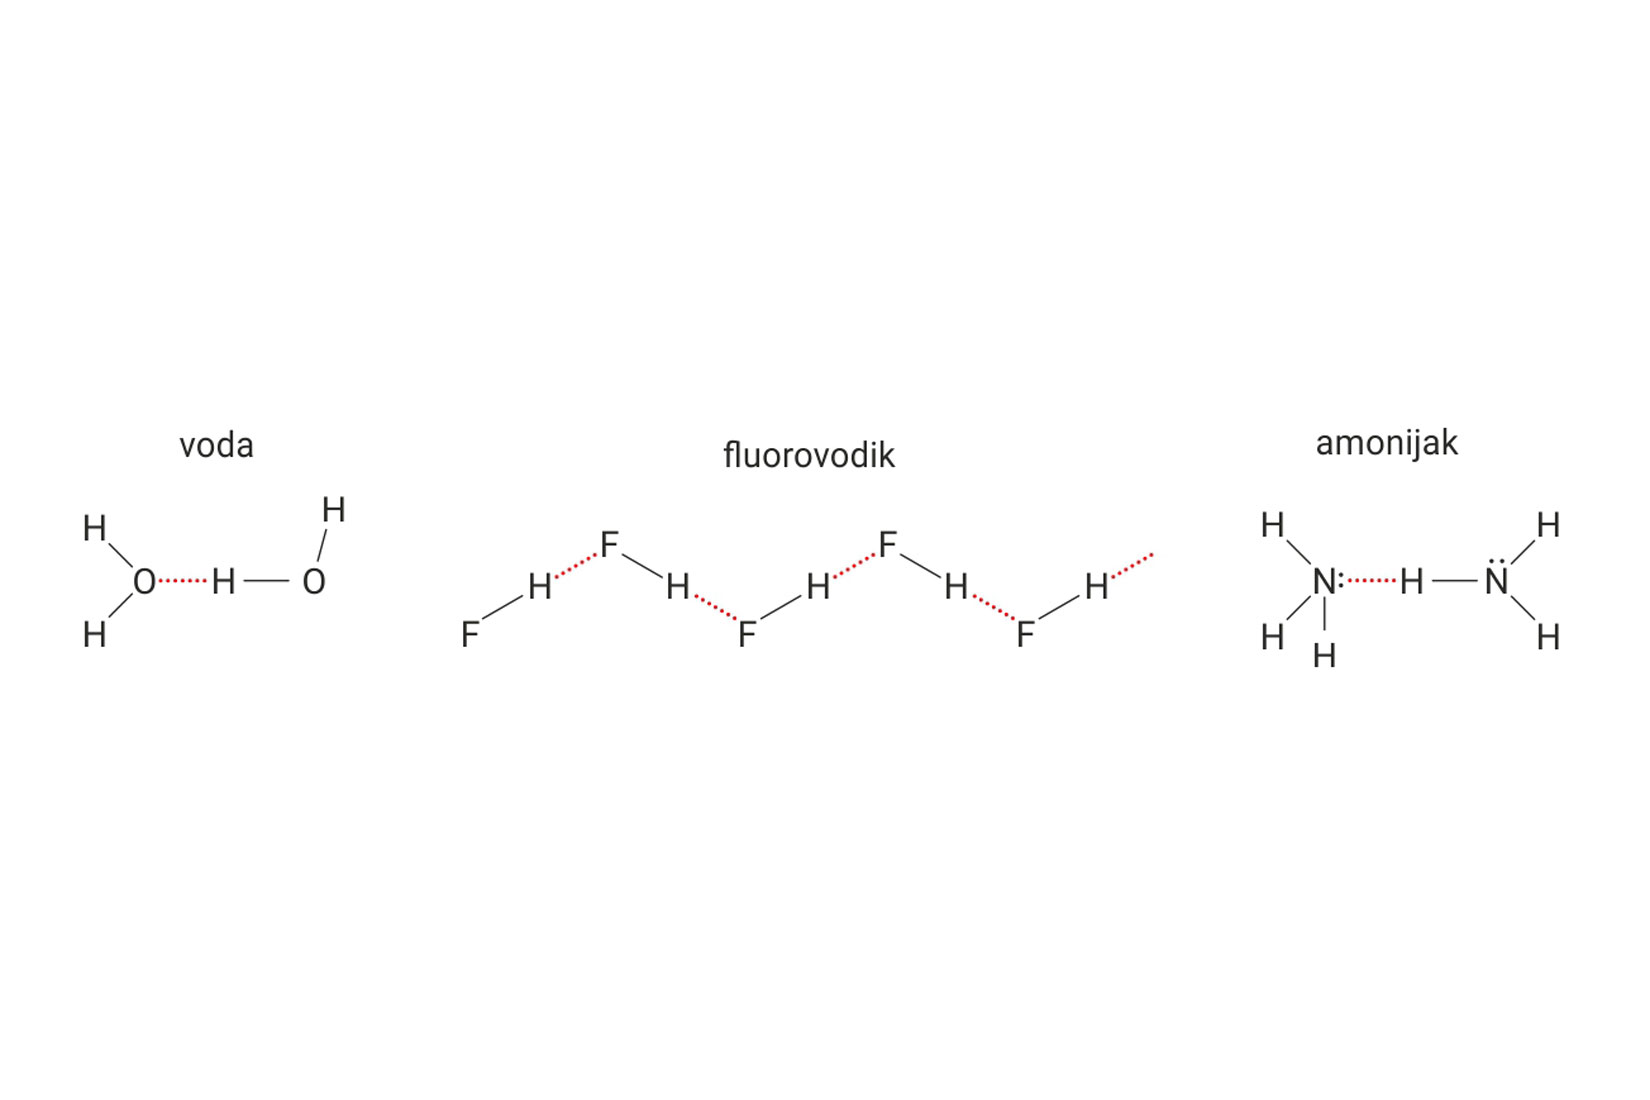 Fotografija prikazuje strukturnu formulu vode, fluorovodika i amonijaka. Vodikove veze su prikazane isprekidanom linijom, umjesto ravne.